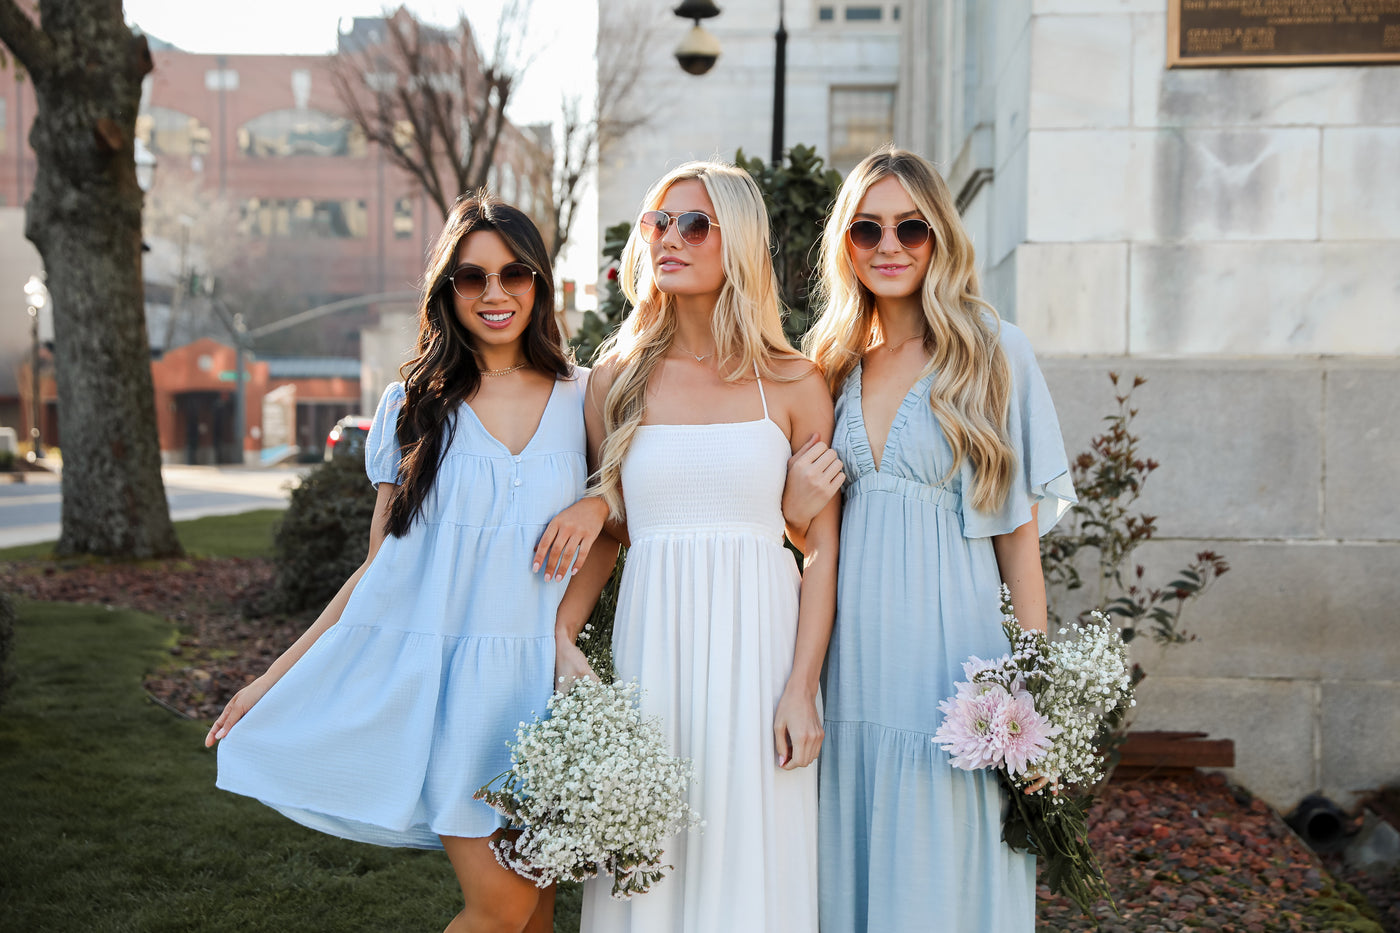 models wearing cute spring dresses